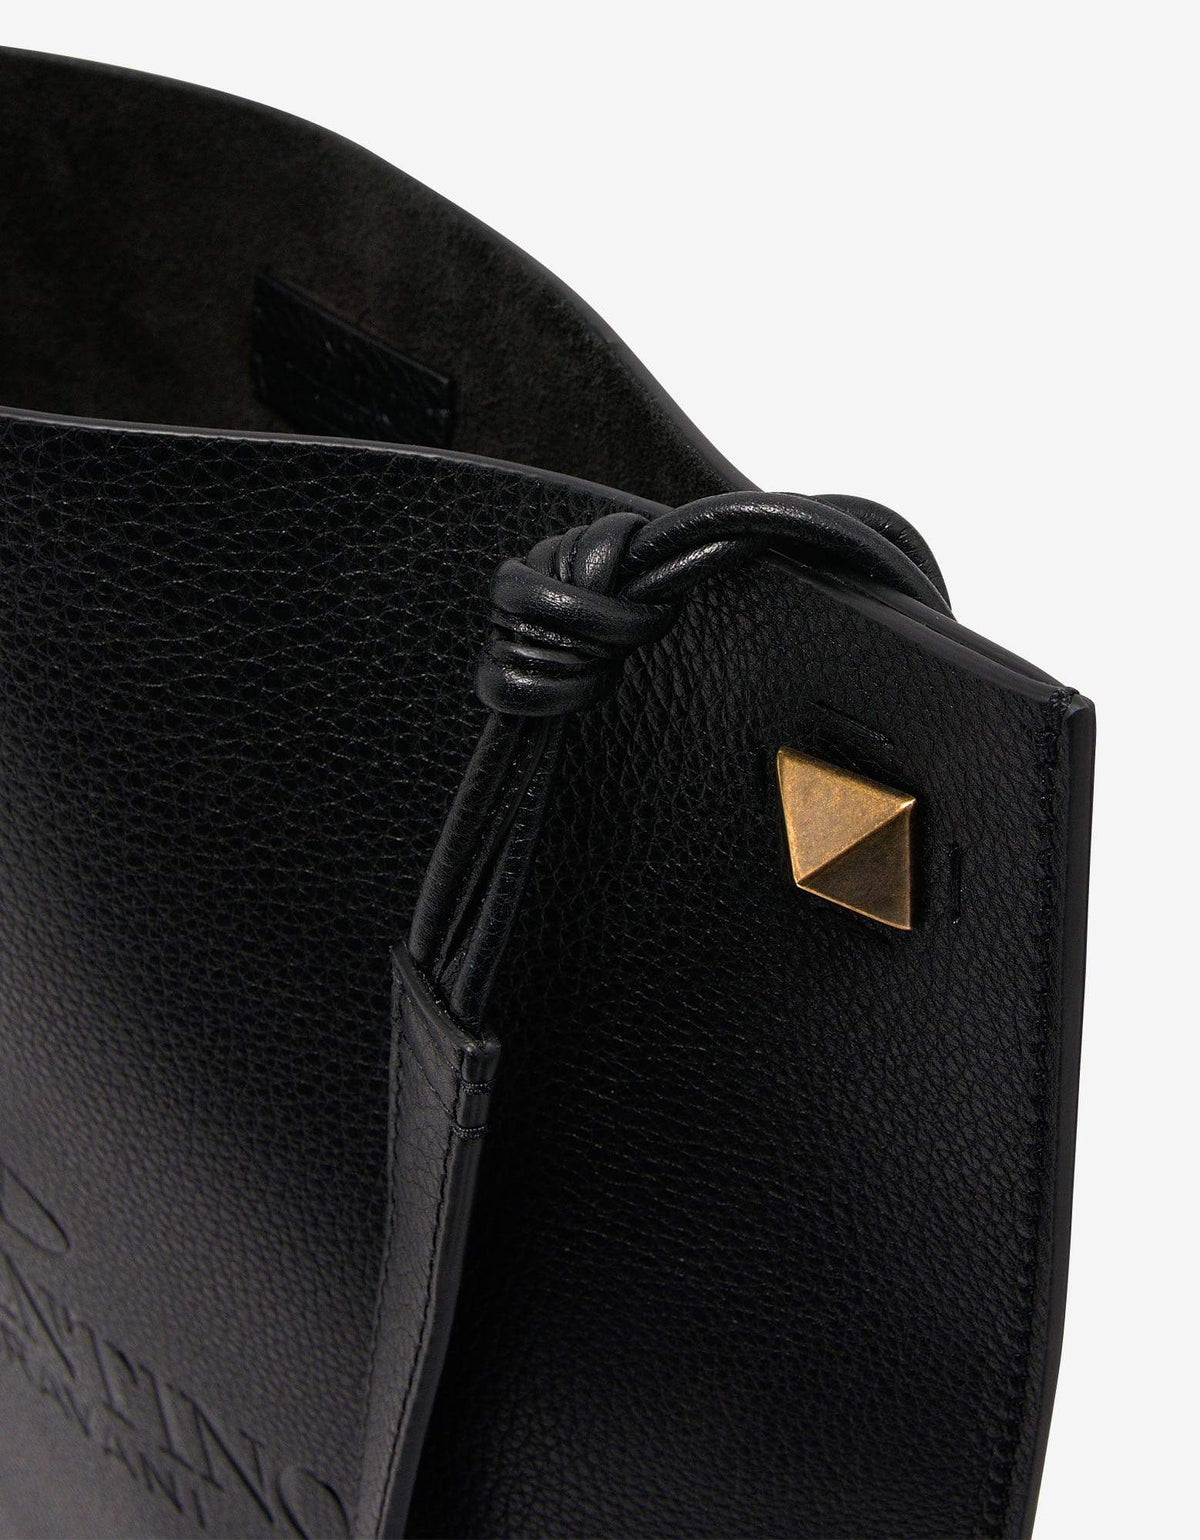 Valentino Garavani Black Identity Leather Crossbody Bag